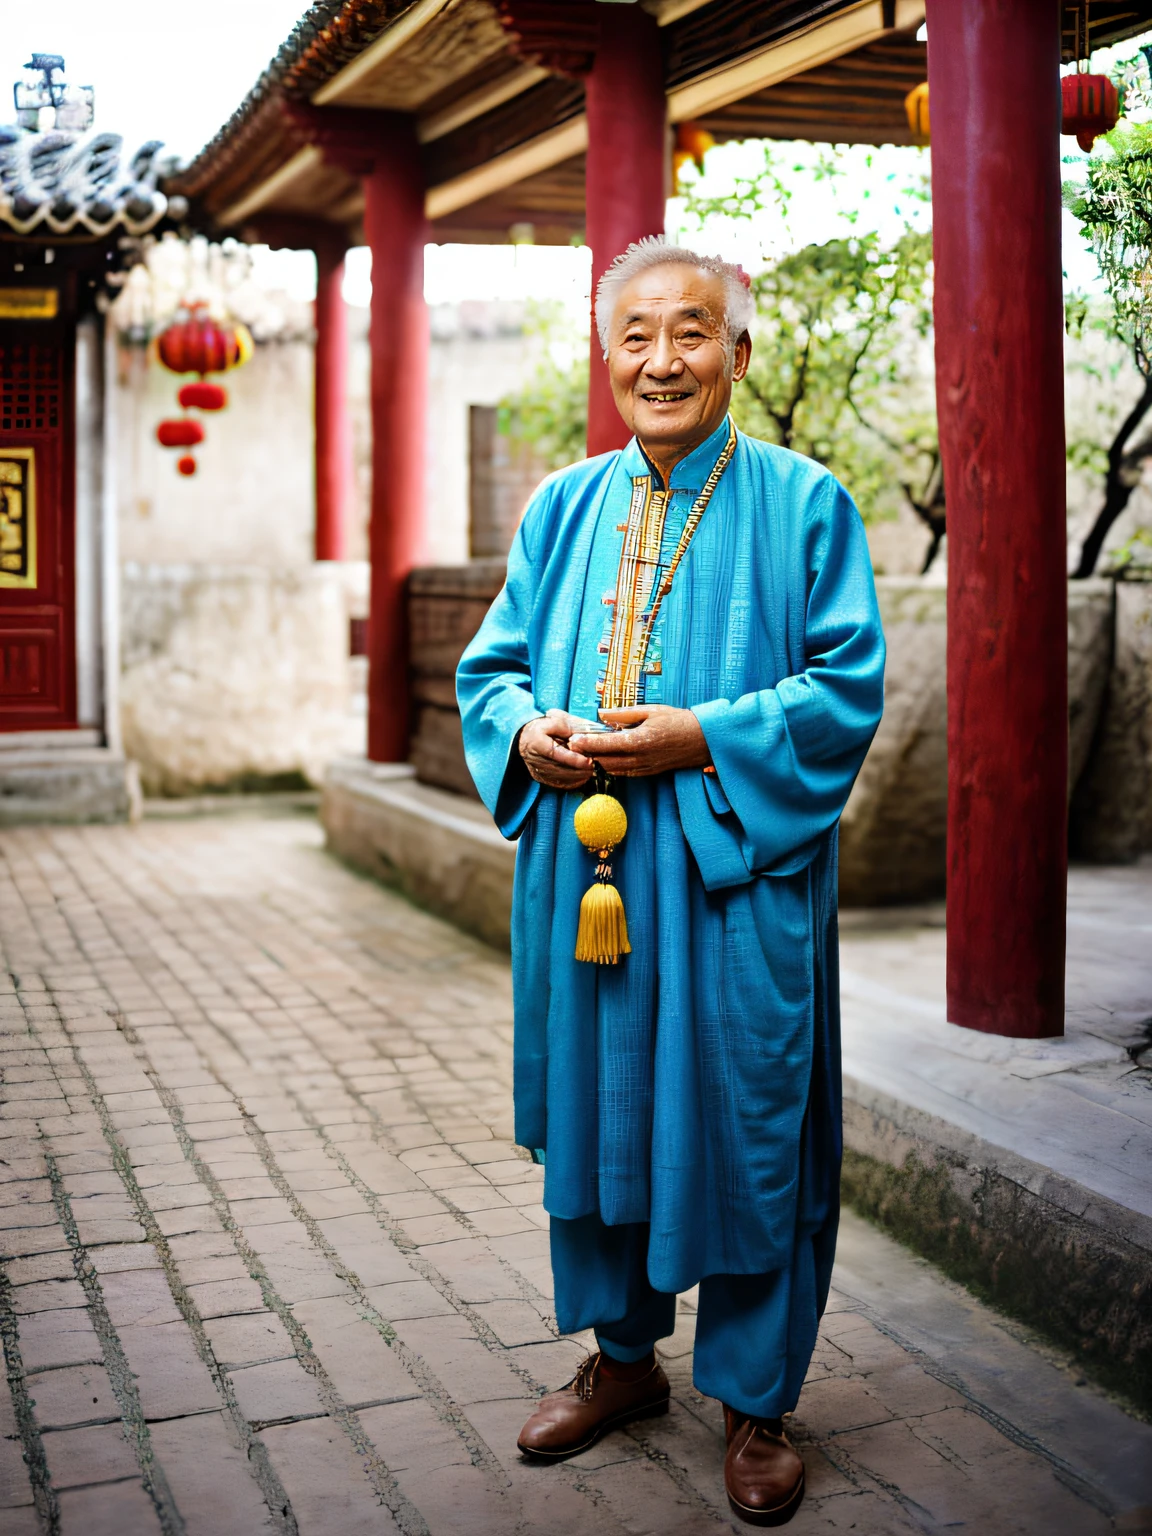 RAW-Fotos，Ein alter Mann im Zhongshan-Anzug hält eine buddhistische Perle，Der Hintergrund ist ein Innenhof im chinesischen Stil，Halbkörperfoto，（hochdetailliert：1.2），8K Ultra High Definition，digital SLR camera，sanftesweichesLicht，hohe hohe Qualität